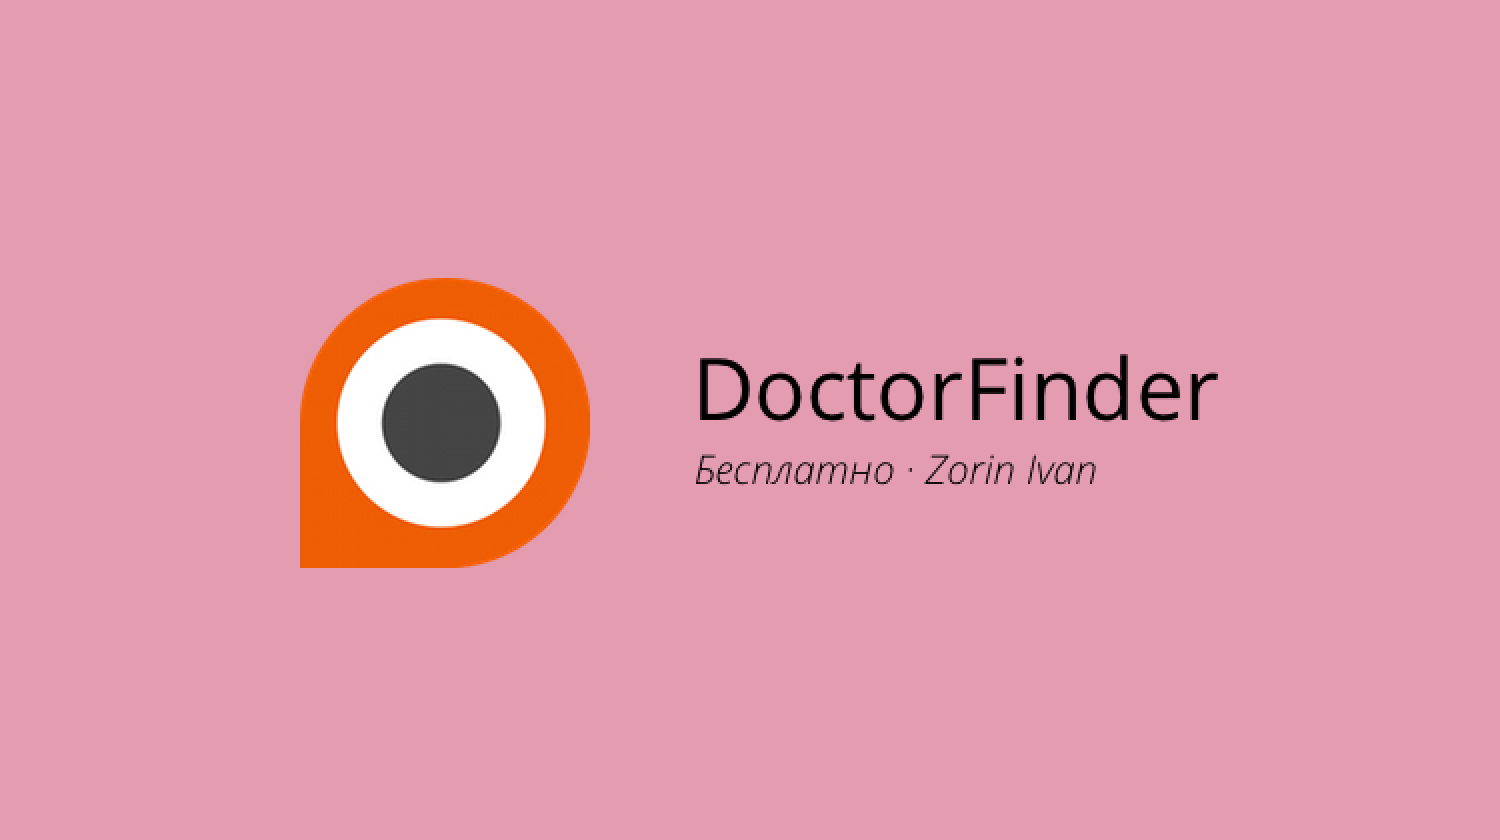 DoctorFinder